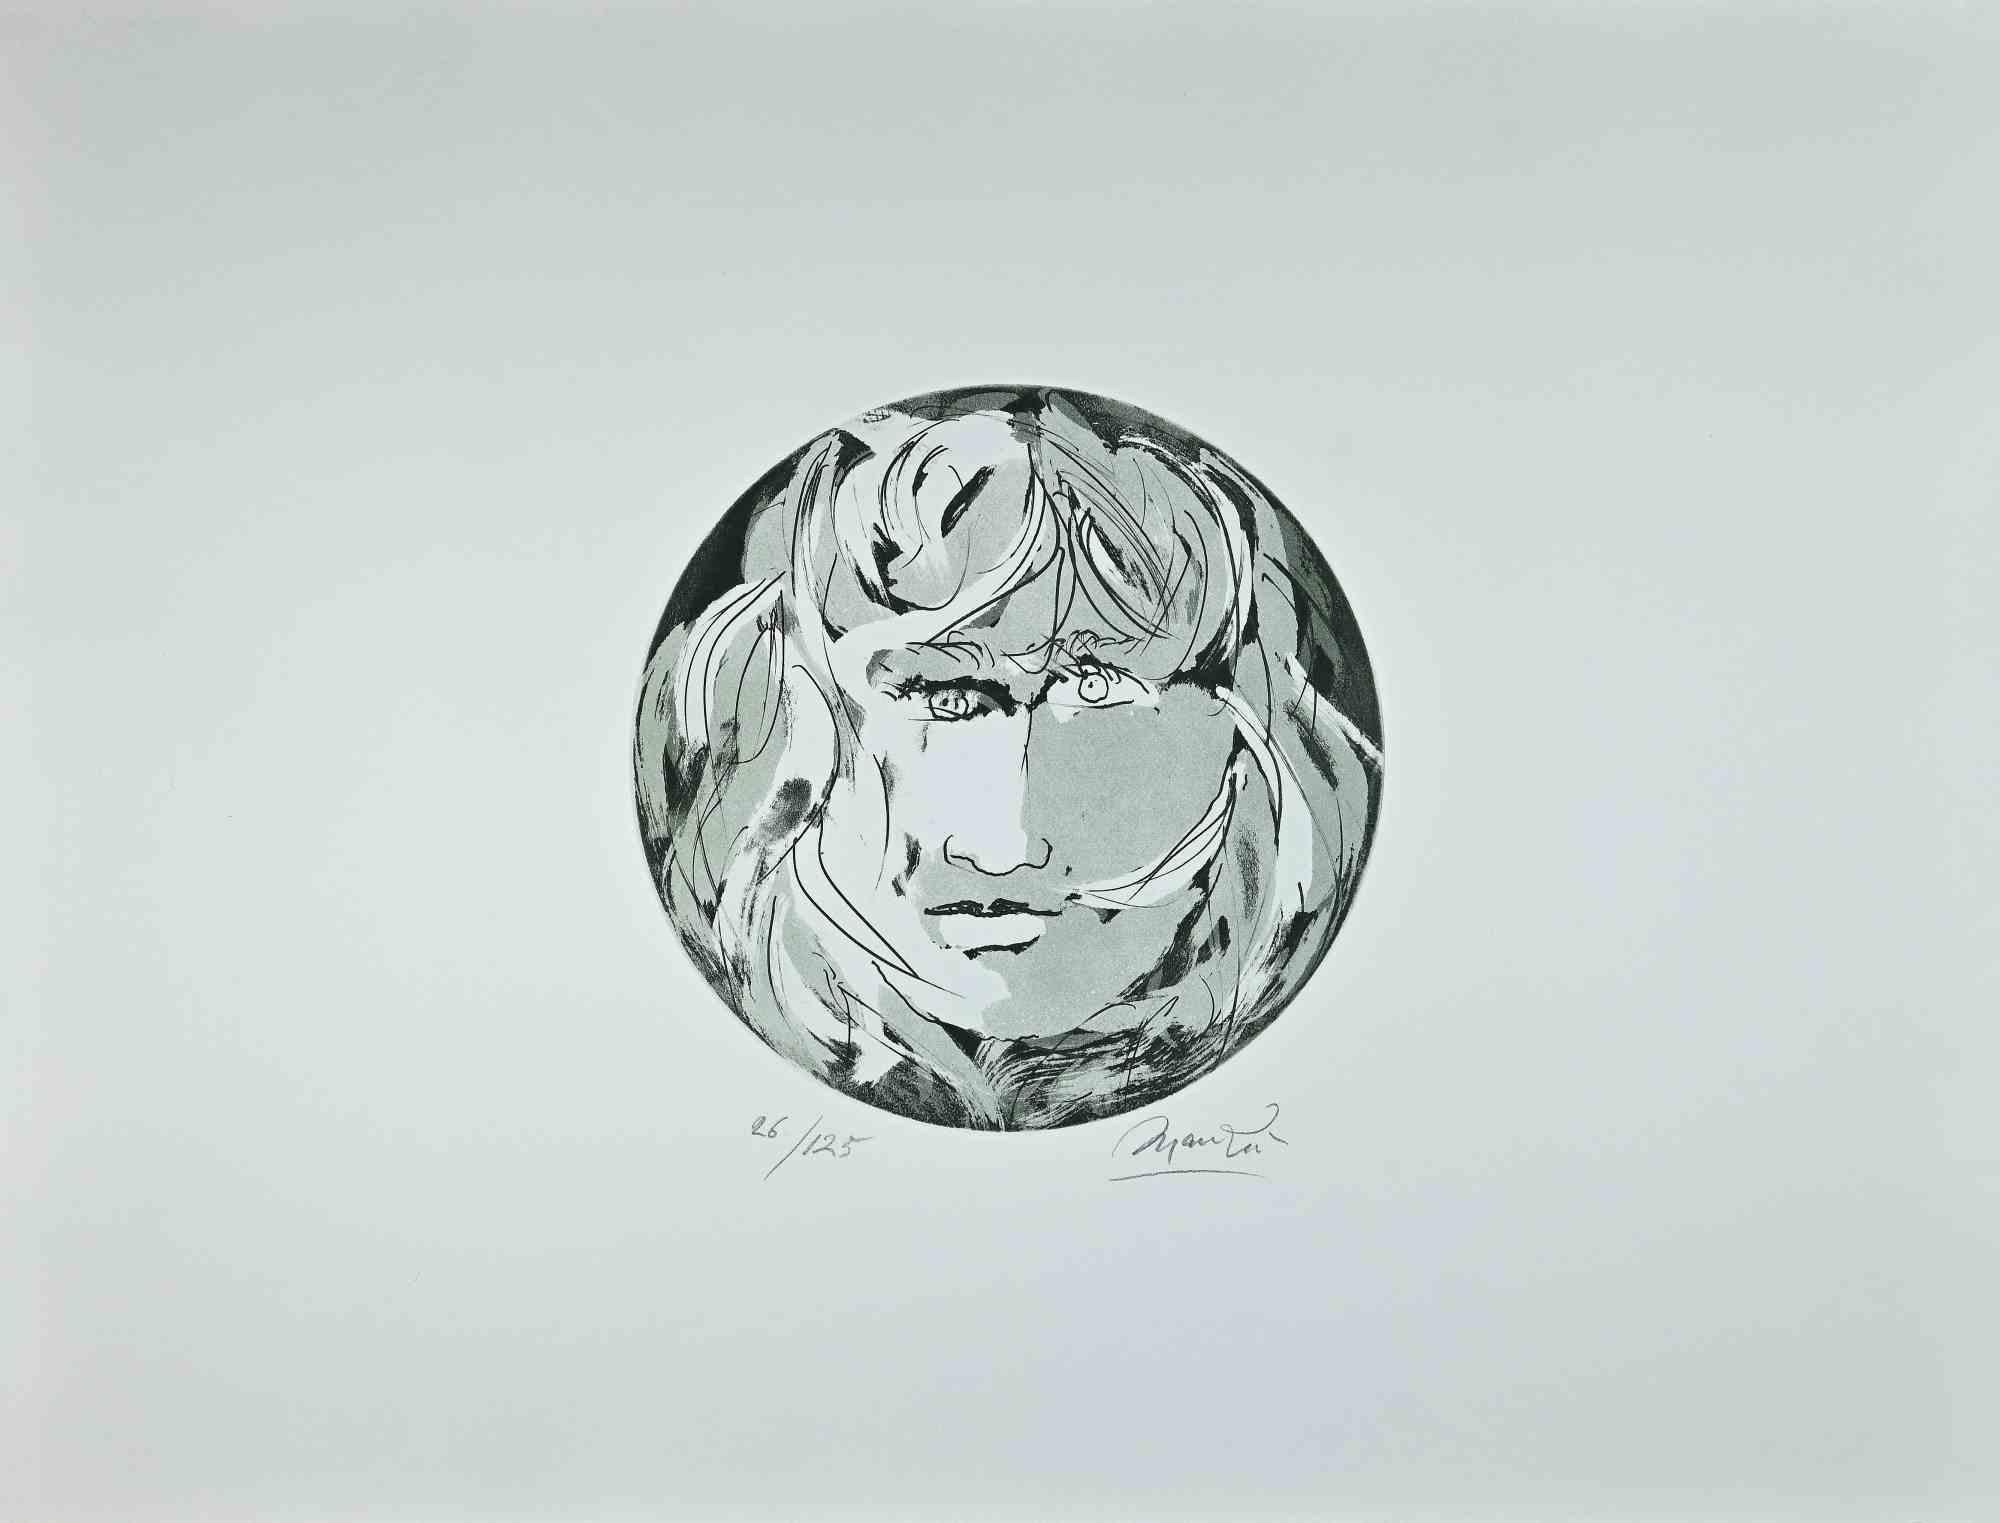 Giacomo Manzú Portrait Print - Round Medusa -  Etching by Giacomo Manzù - 1970